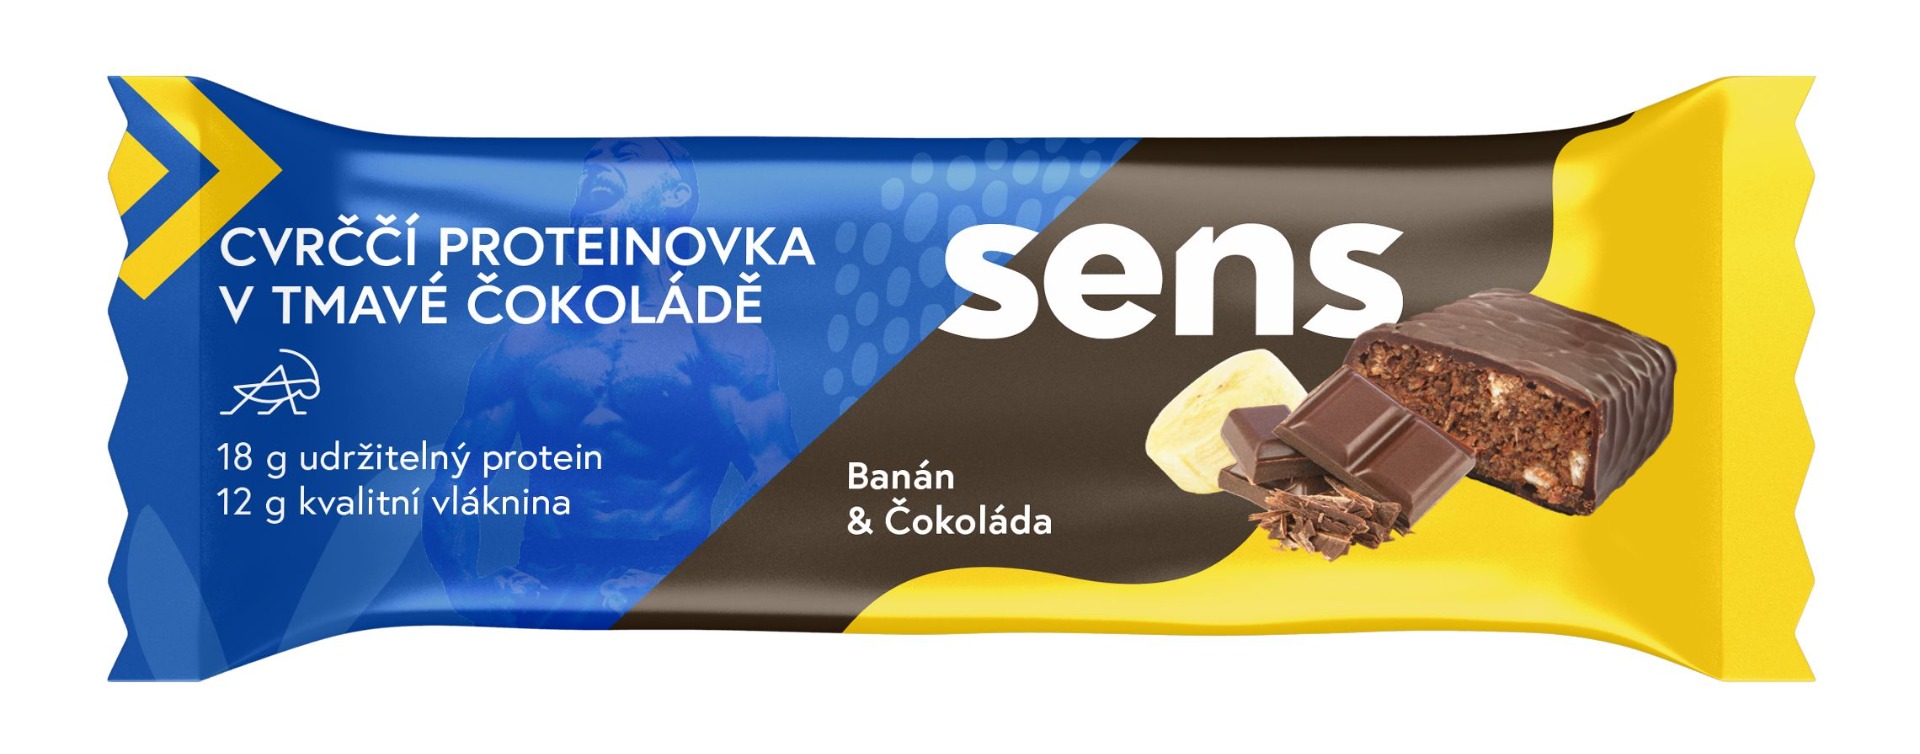 SENS Cvrččí proteinovka v tmavé čokoládě Banán & čokoláda 60 g SENS